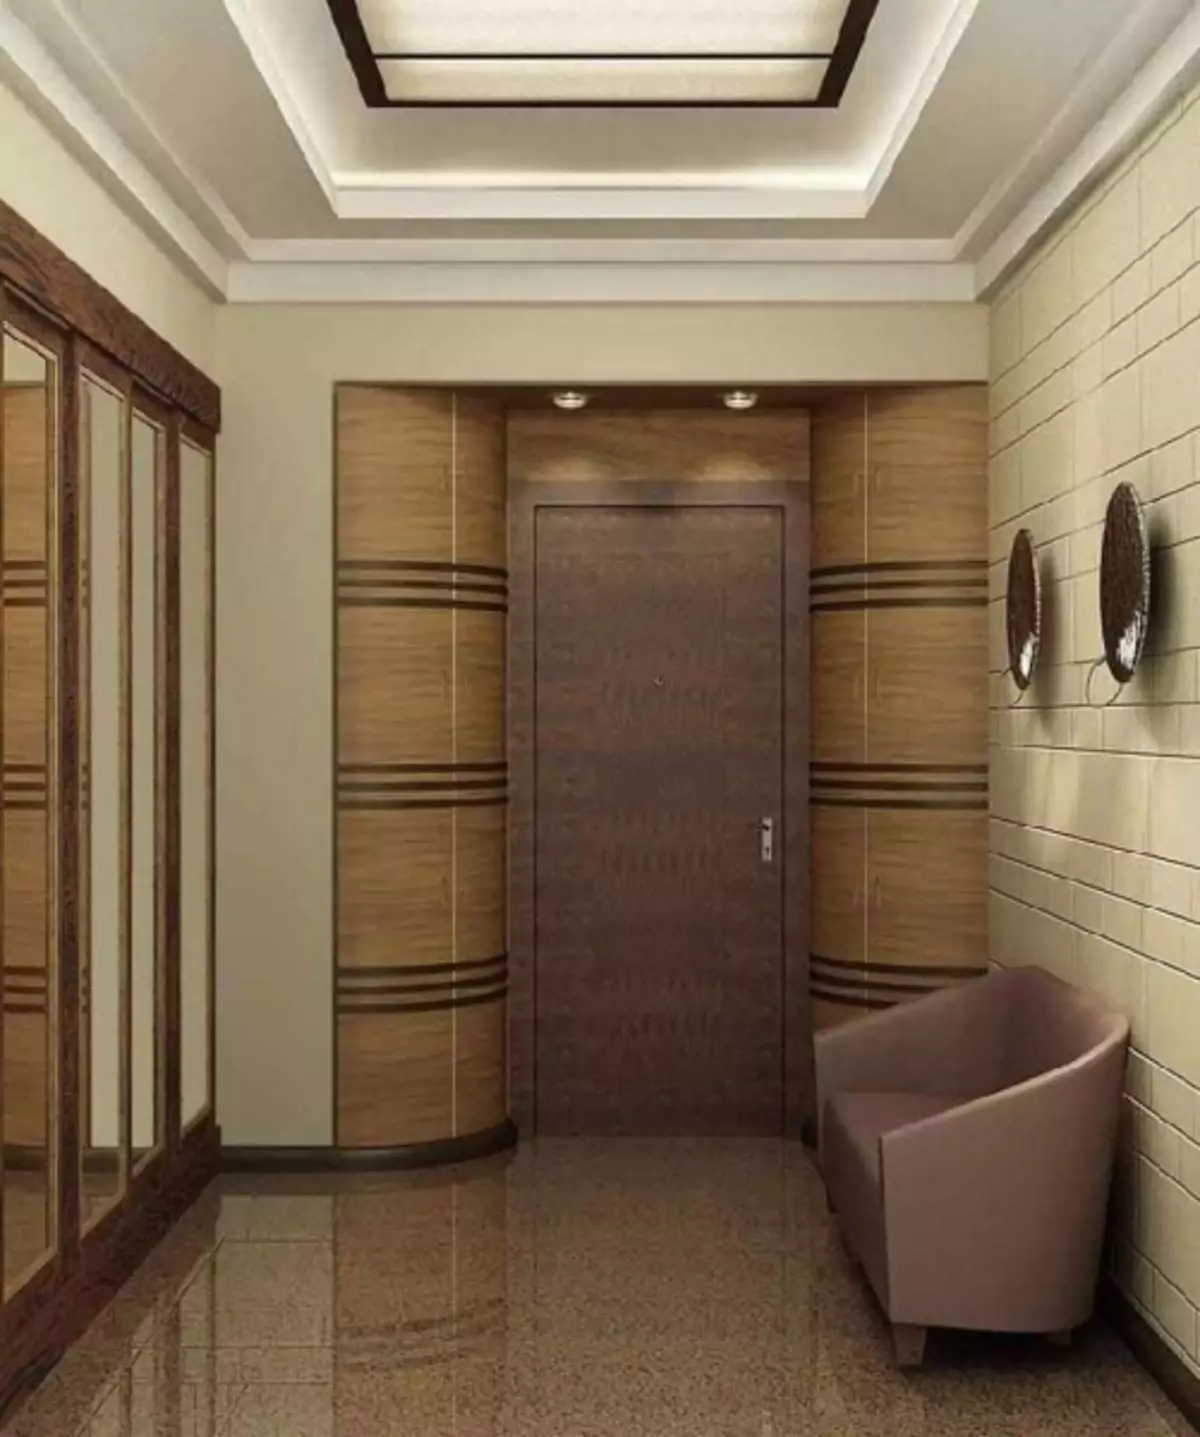 Wallpaper në një korridor në apartament Foto: Stone përfunduar, për një korridor të vogël të ngushtë, të cilat zgjedhin, të lëngshme në Hrushovi, për sallat e korridorit, video